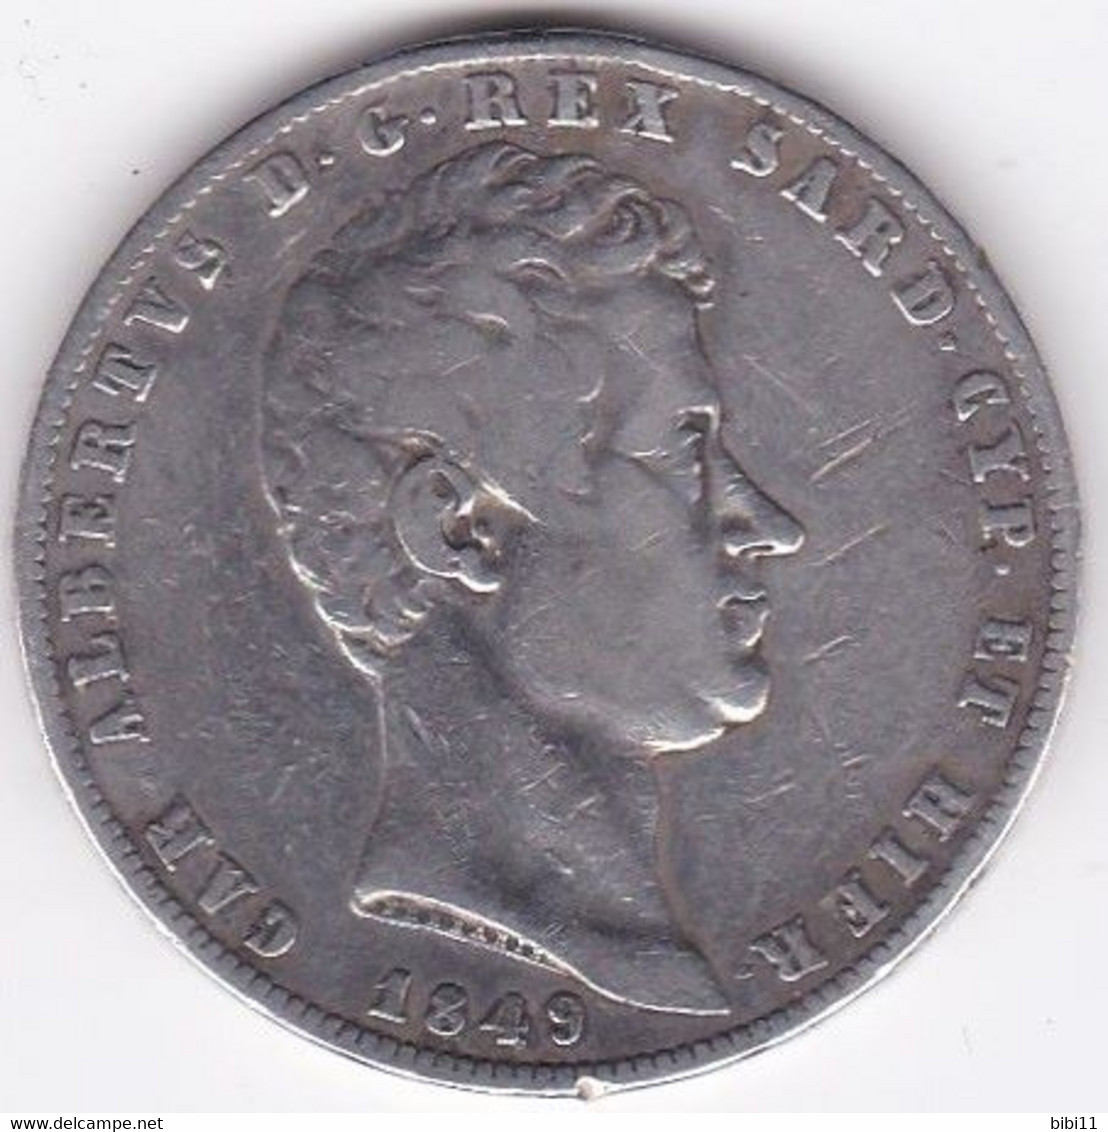 Regno Di Sardegna 5 Lire 1849 P Genova. Ancoretta. Carlo Alberto, En Argent - Piemonte-Sardegna, Savoia Italiana